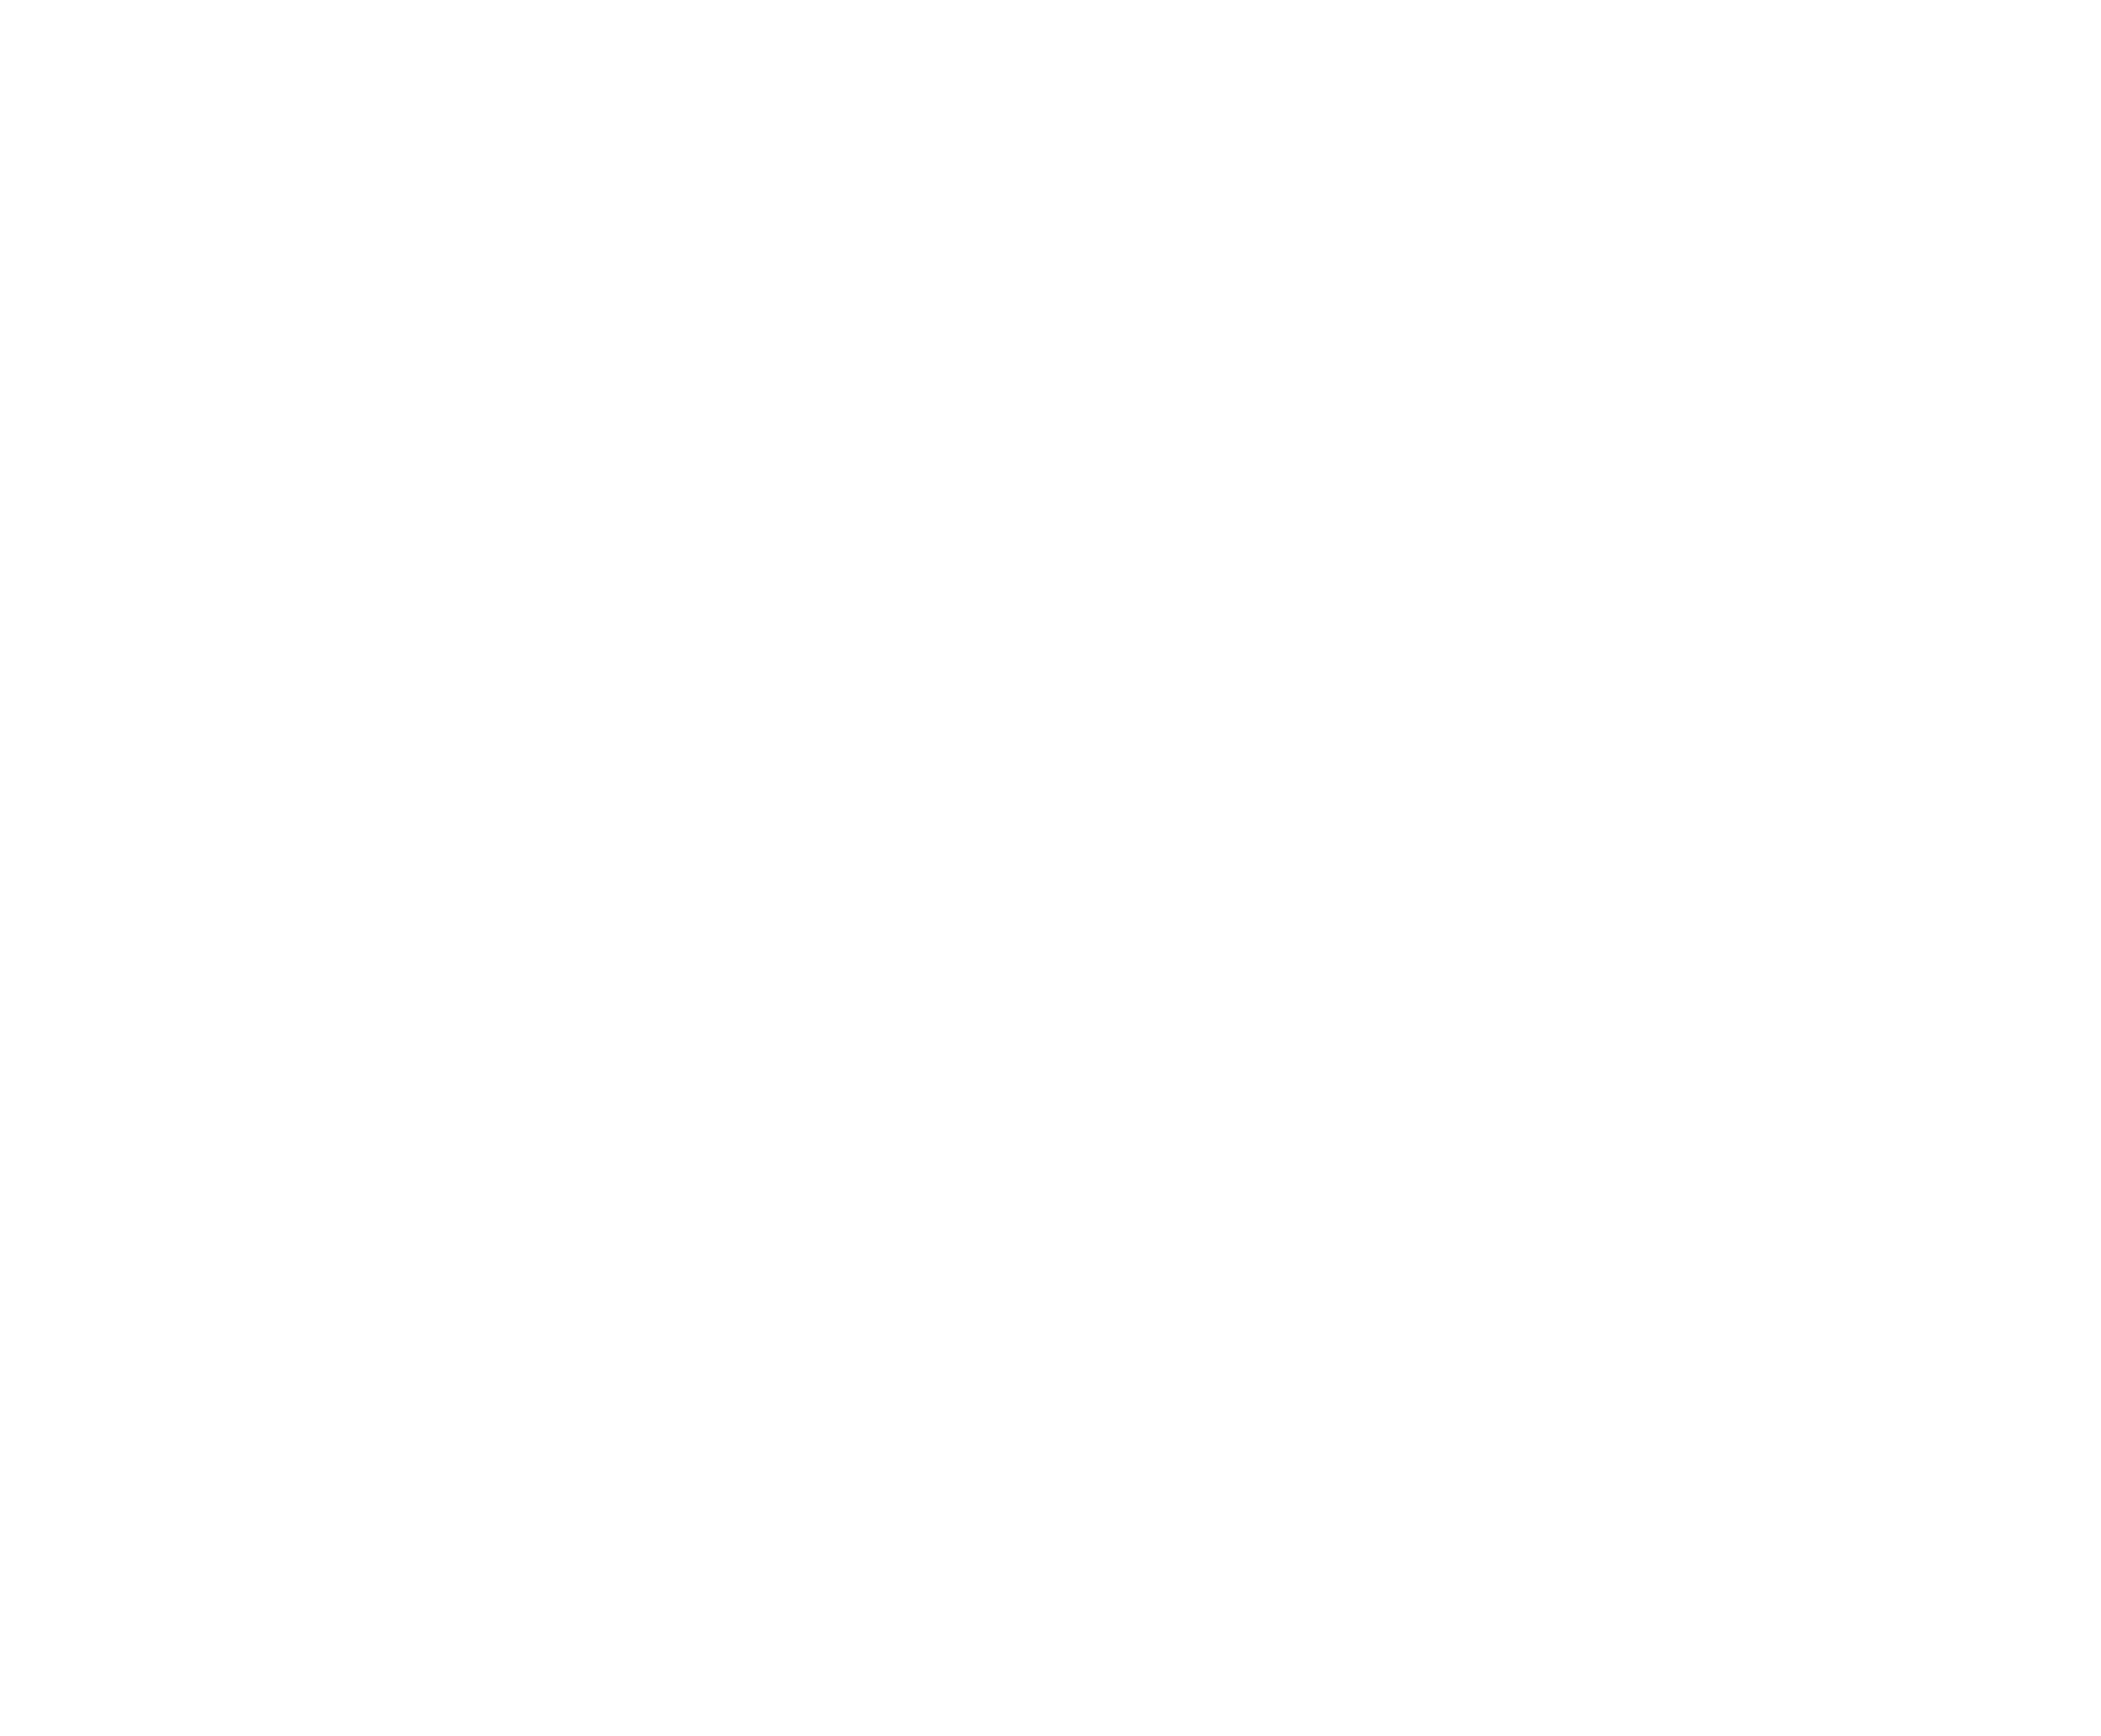 World Social Media Forum